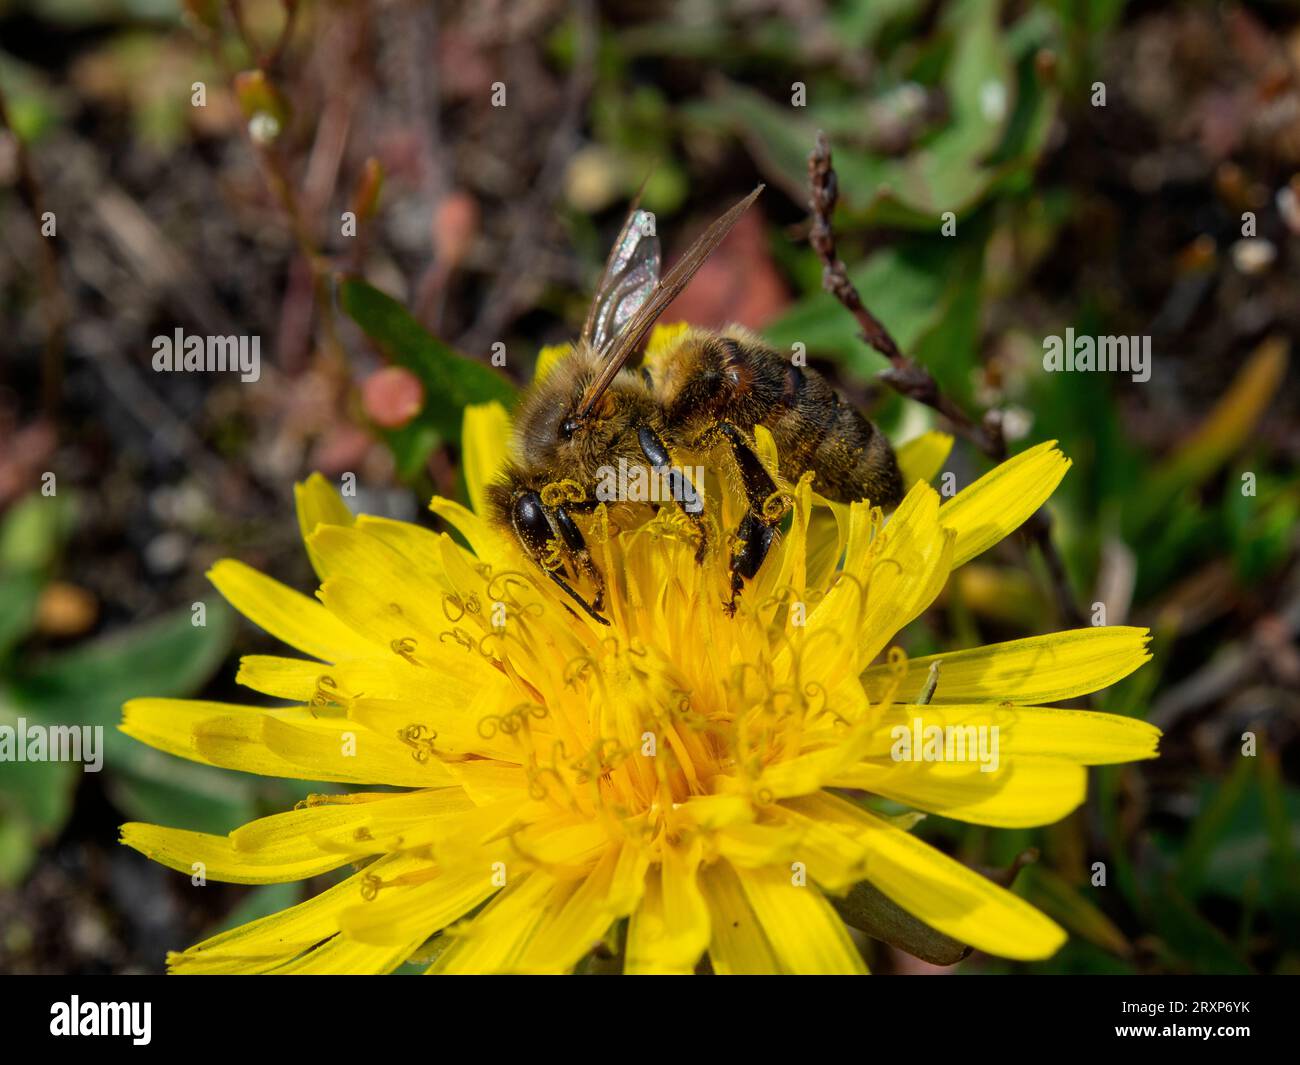 Une abeille couverte de pollen de fleur recueillant le nectar d'une fleur de pissenlit. Été, journée ensoleillée, nuances chaudes de jaune, premier plan net, backgro flou Banque D'Images